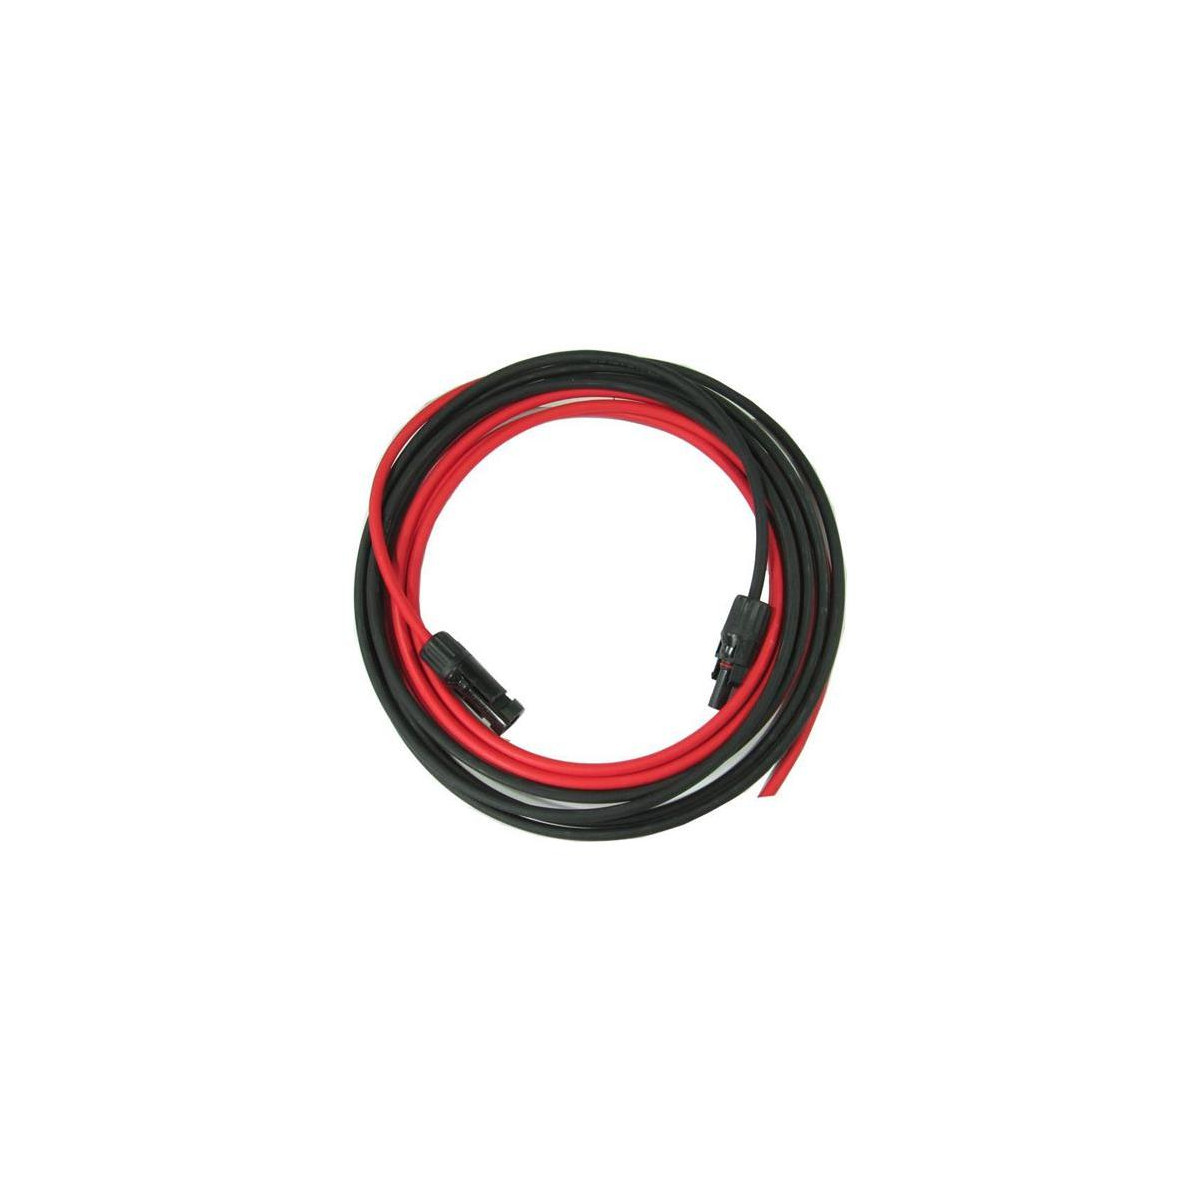 More about Solární kabel 6mm2, červený+černý s konektory MC4, 2m